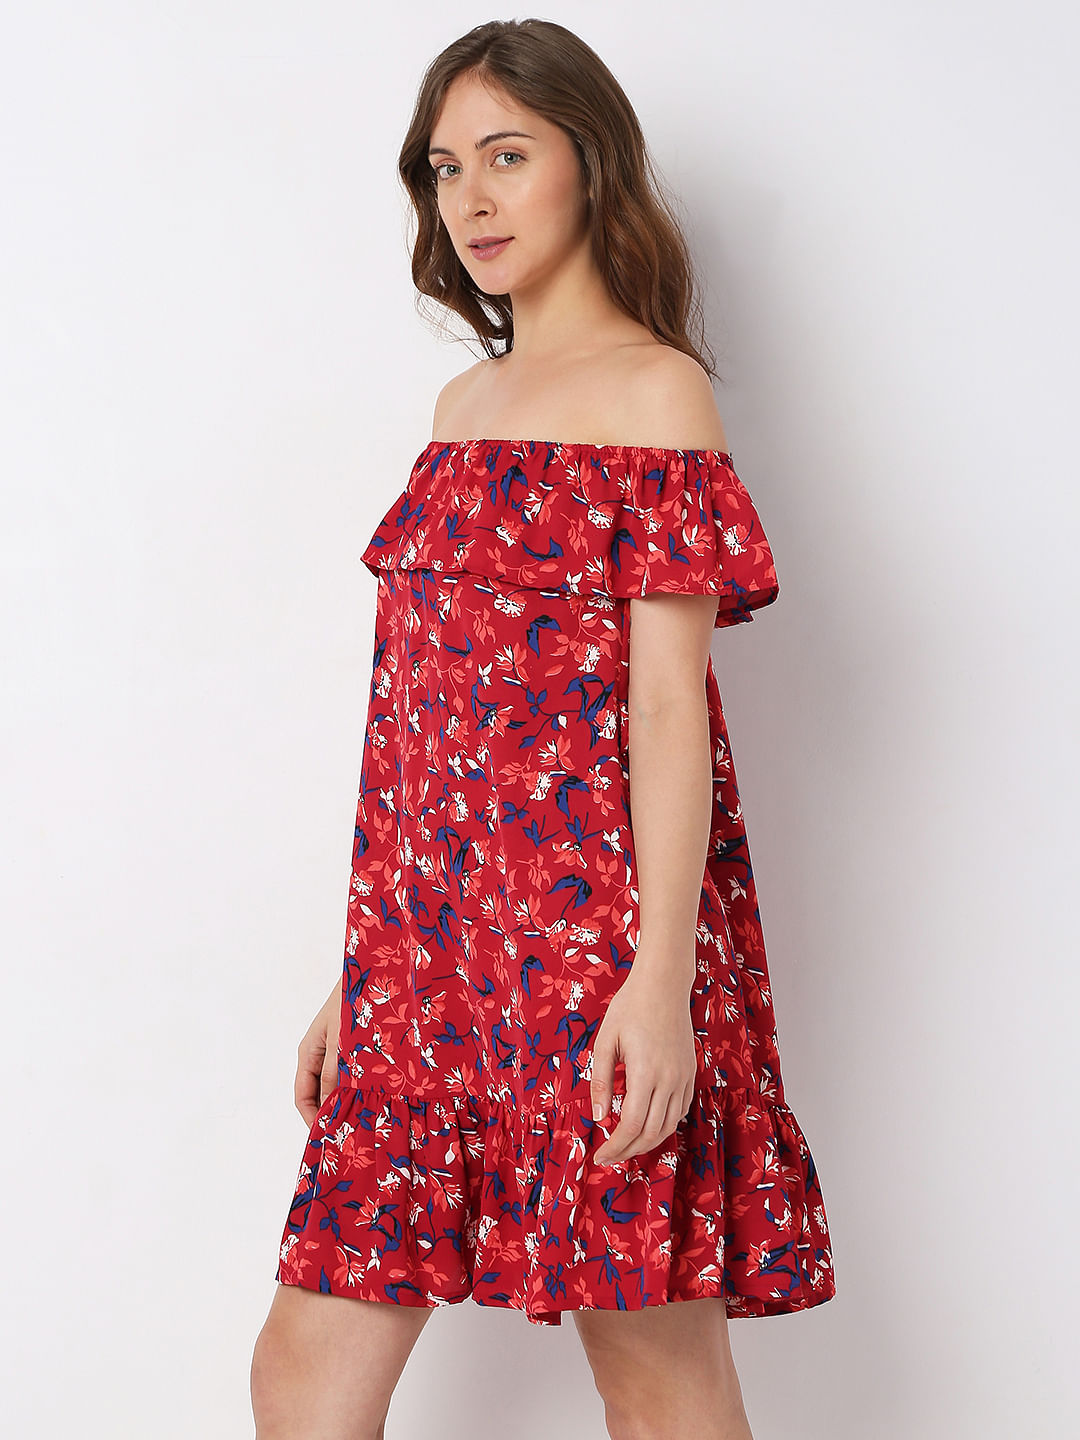 Floral Off- Shoulder Dress for Women